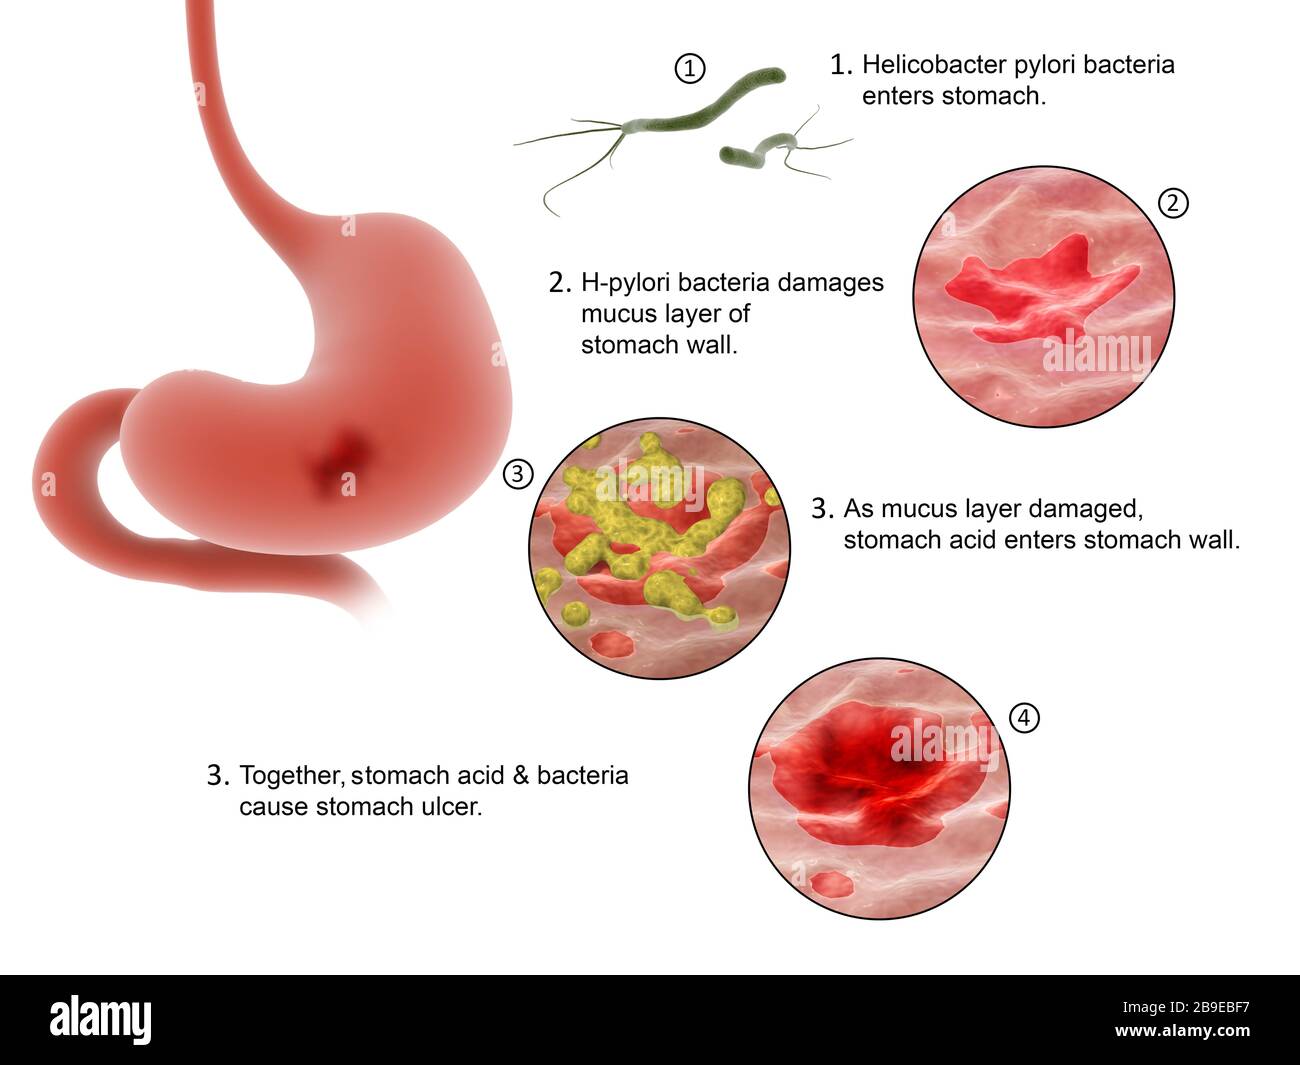 Diagrama que muestra el proceso de entrada de la bacteria Helicobacter pylori en el estómago y la causa de úlceras. Foto de stock